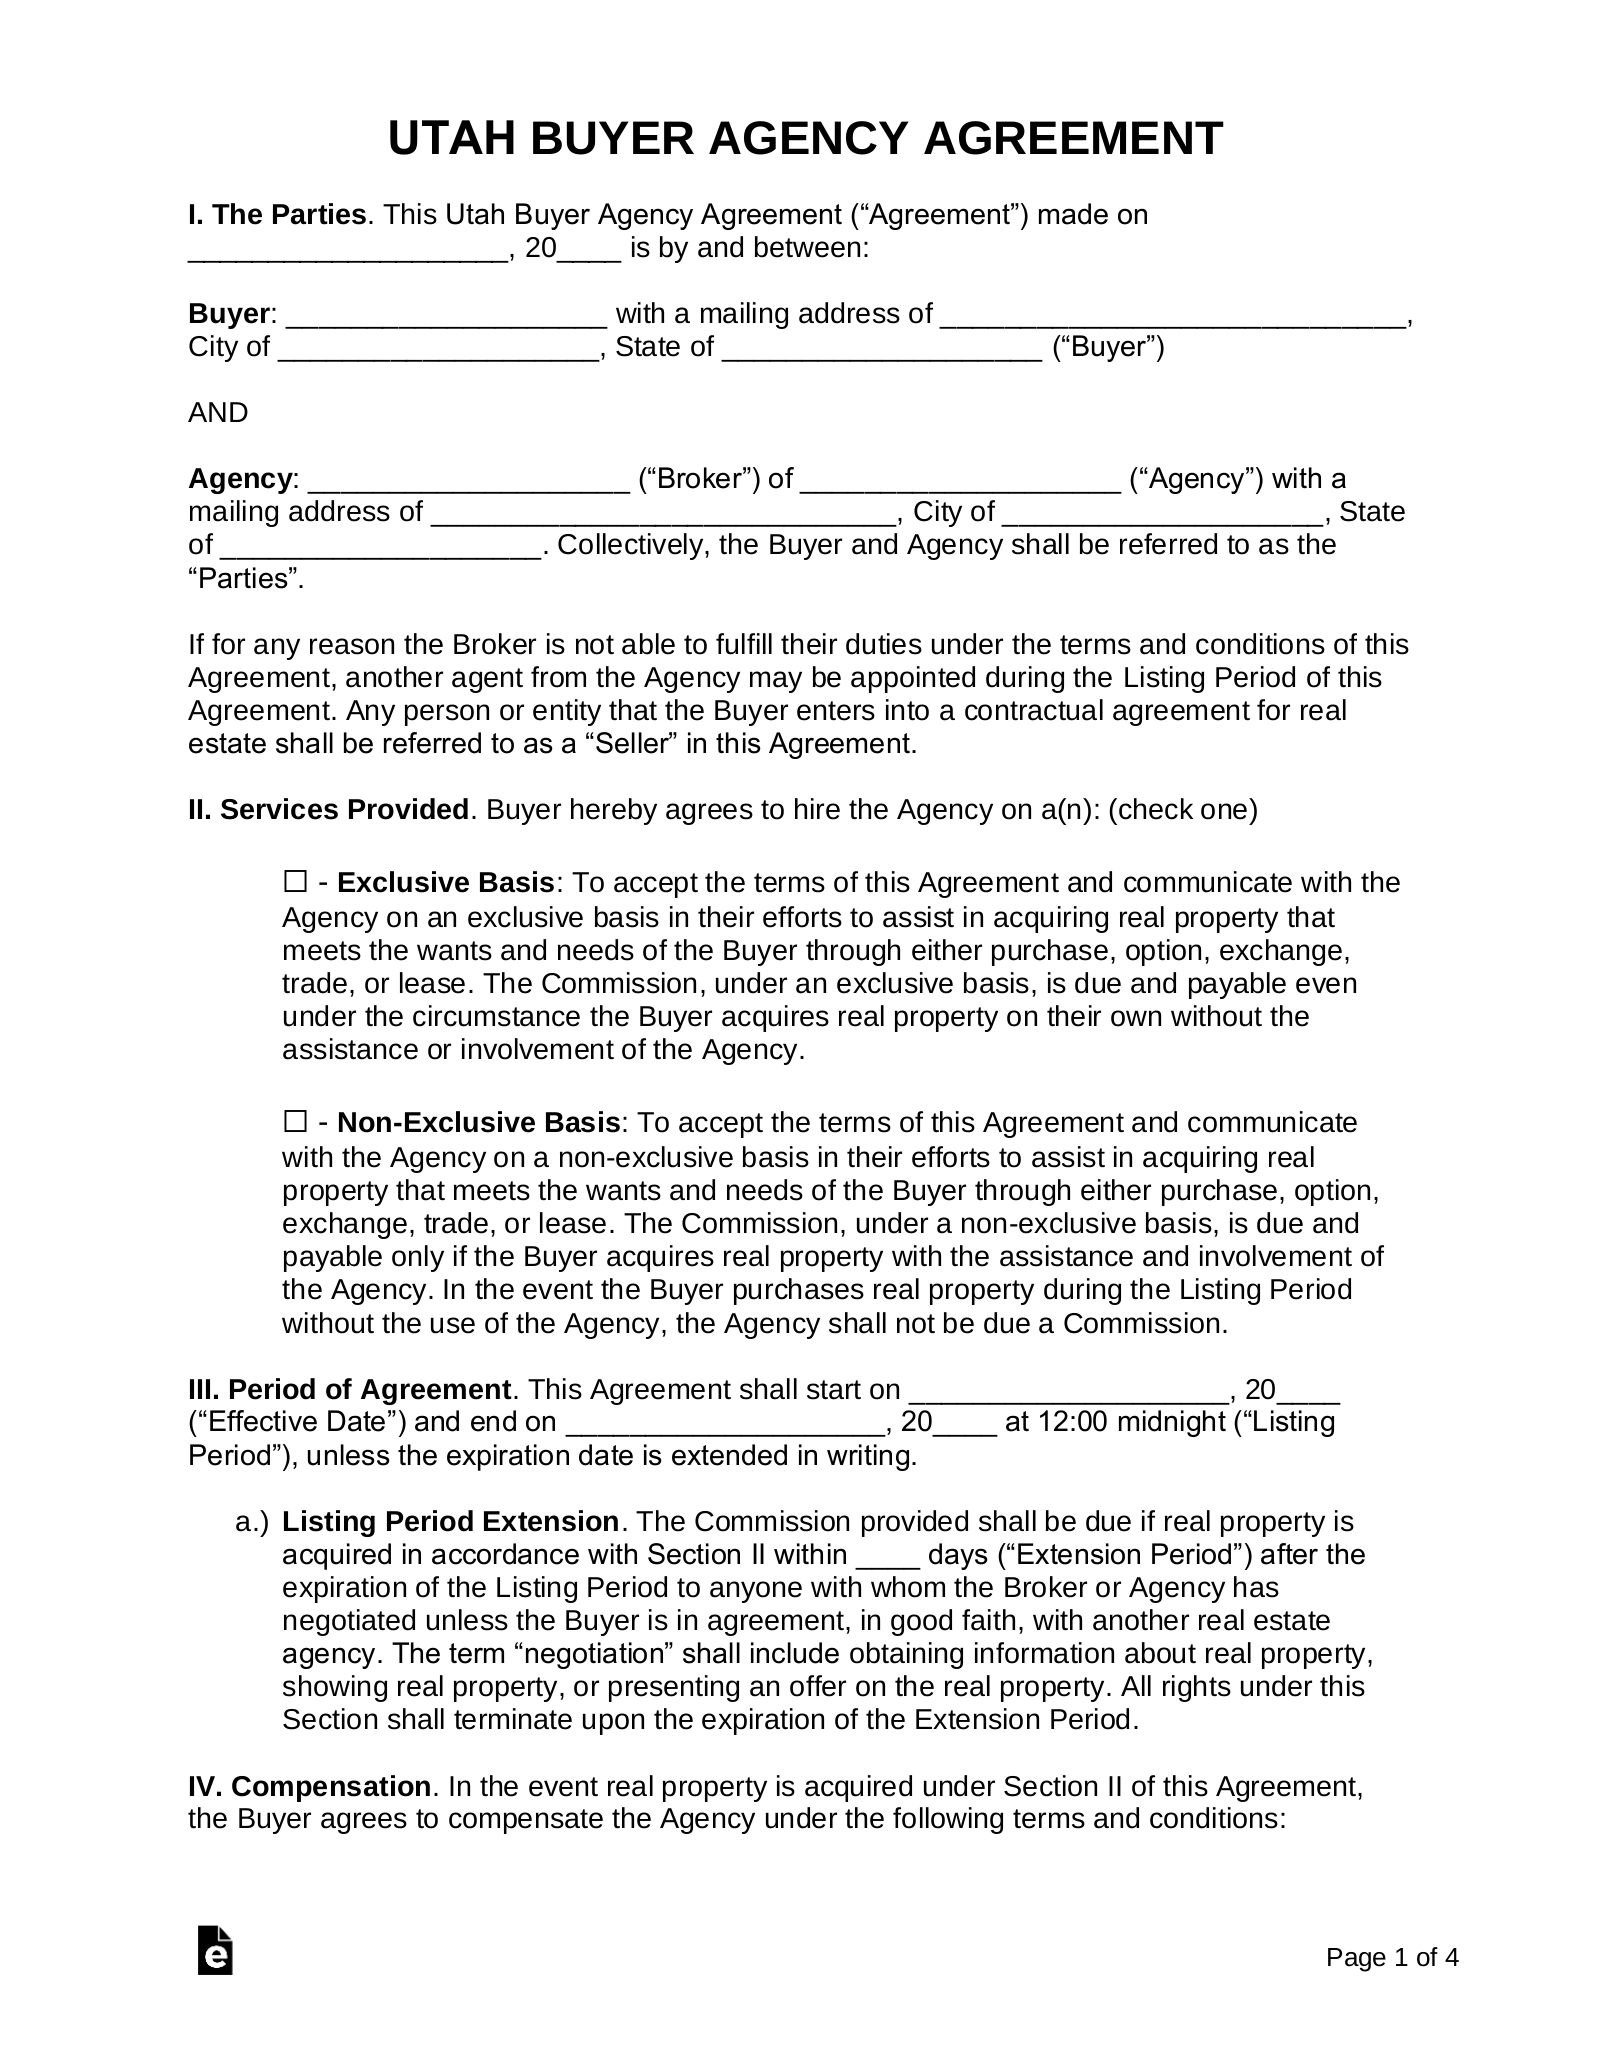 Utah Buyer Agency Agreement